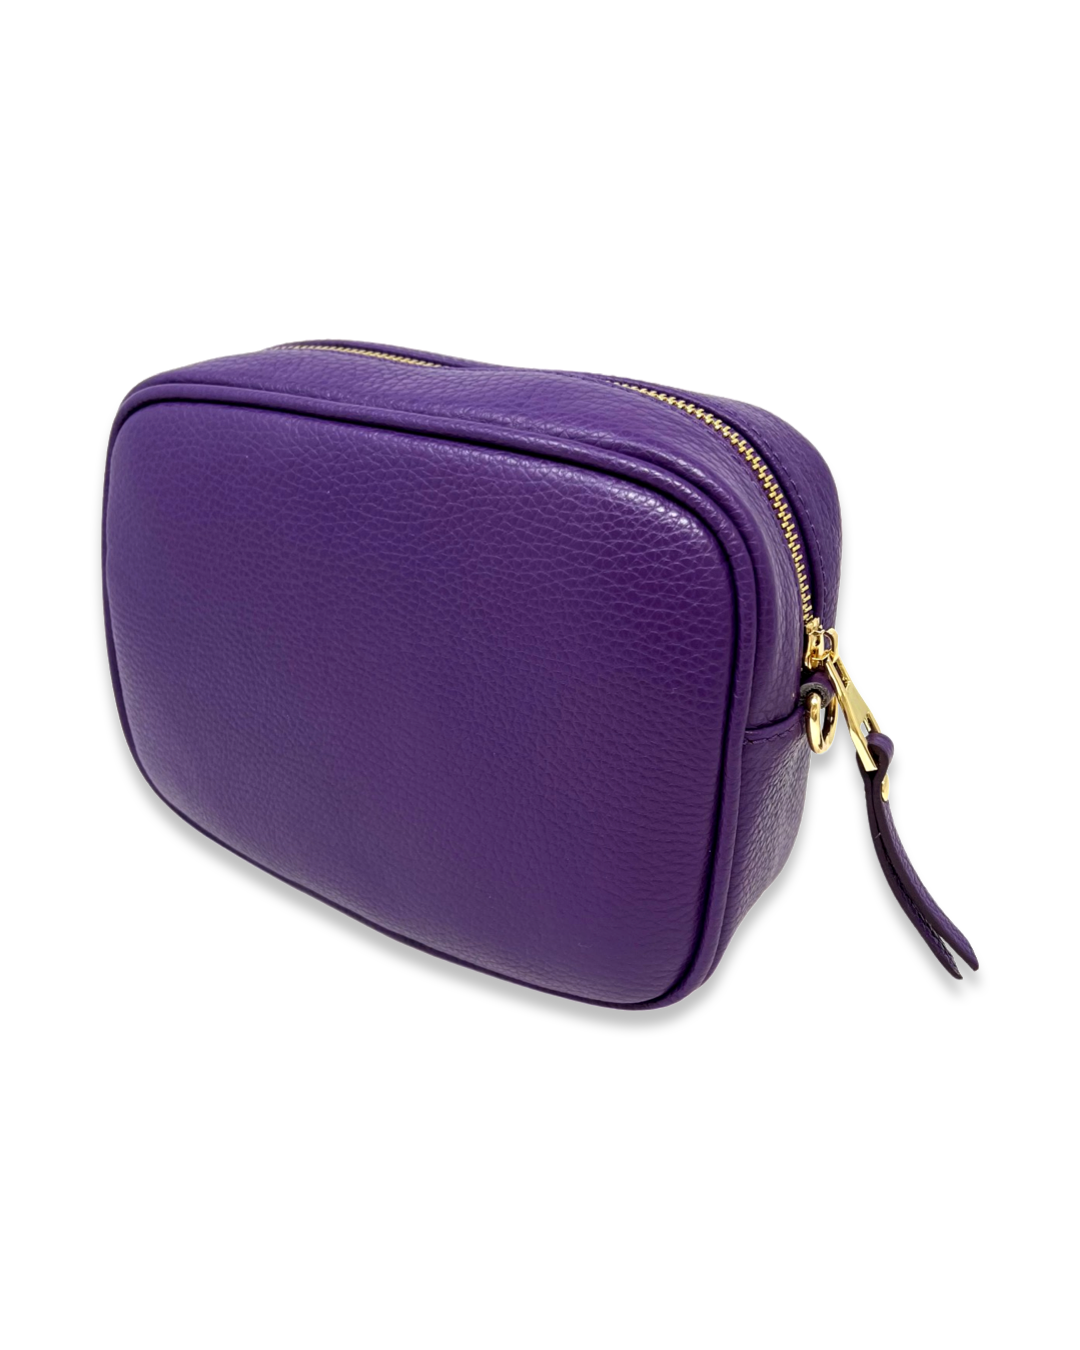 Firenze Bag in Violet